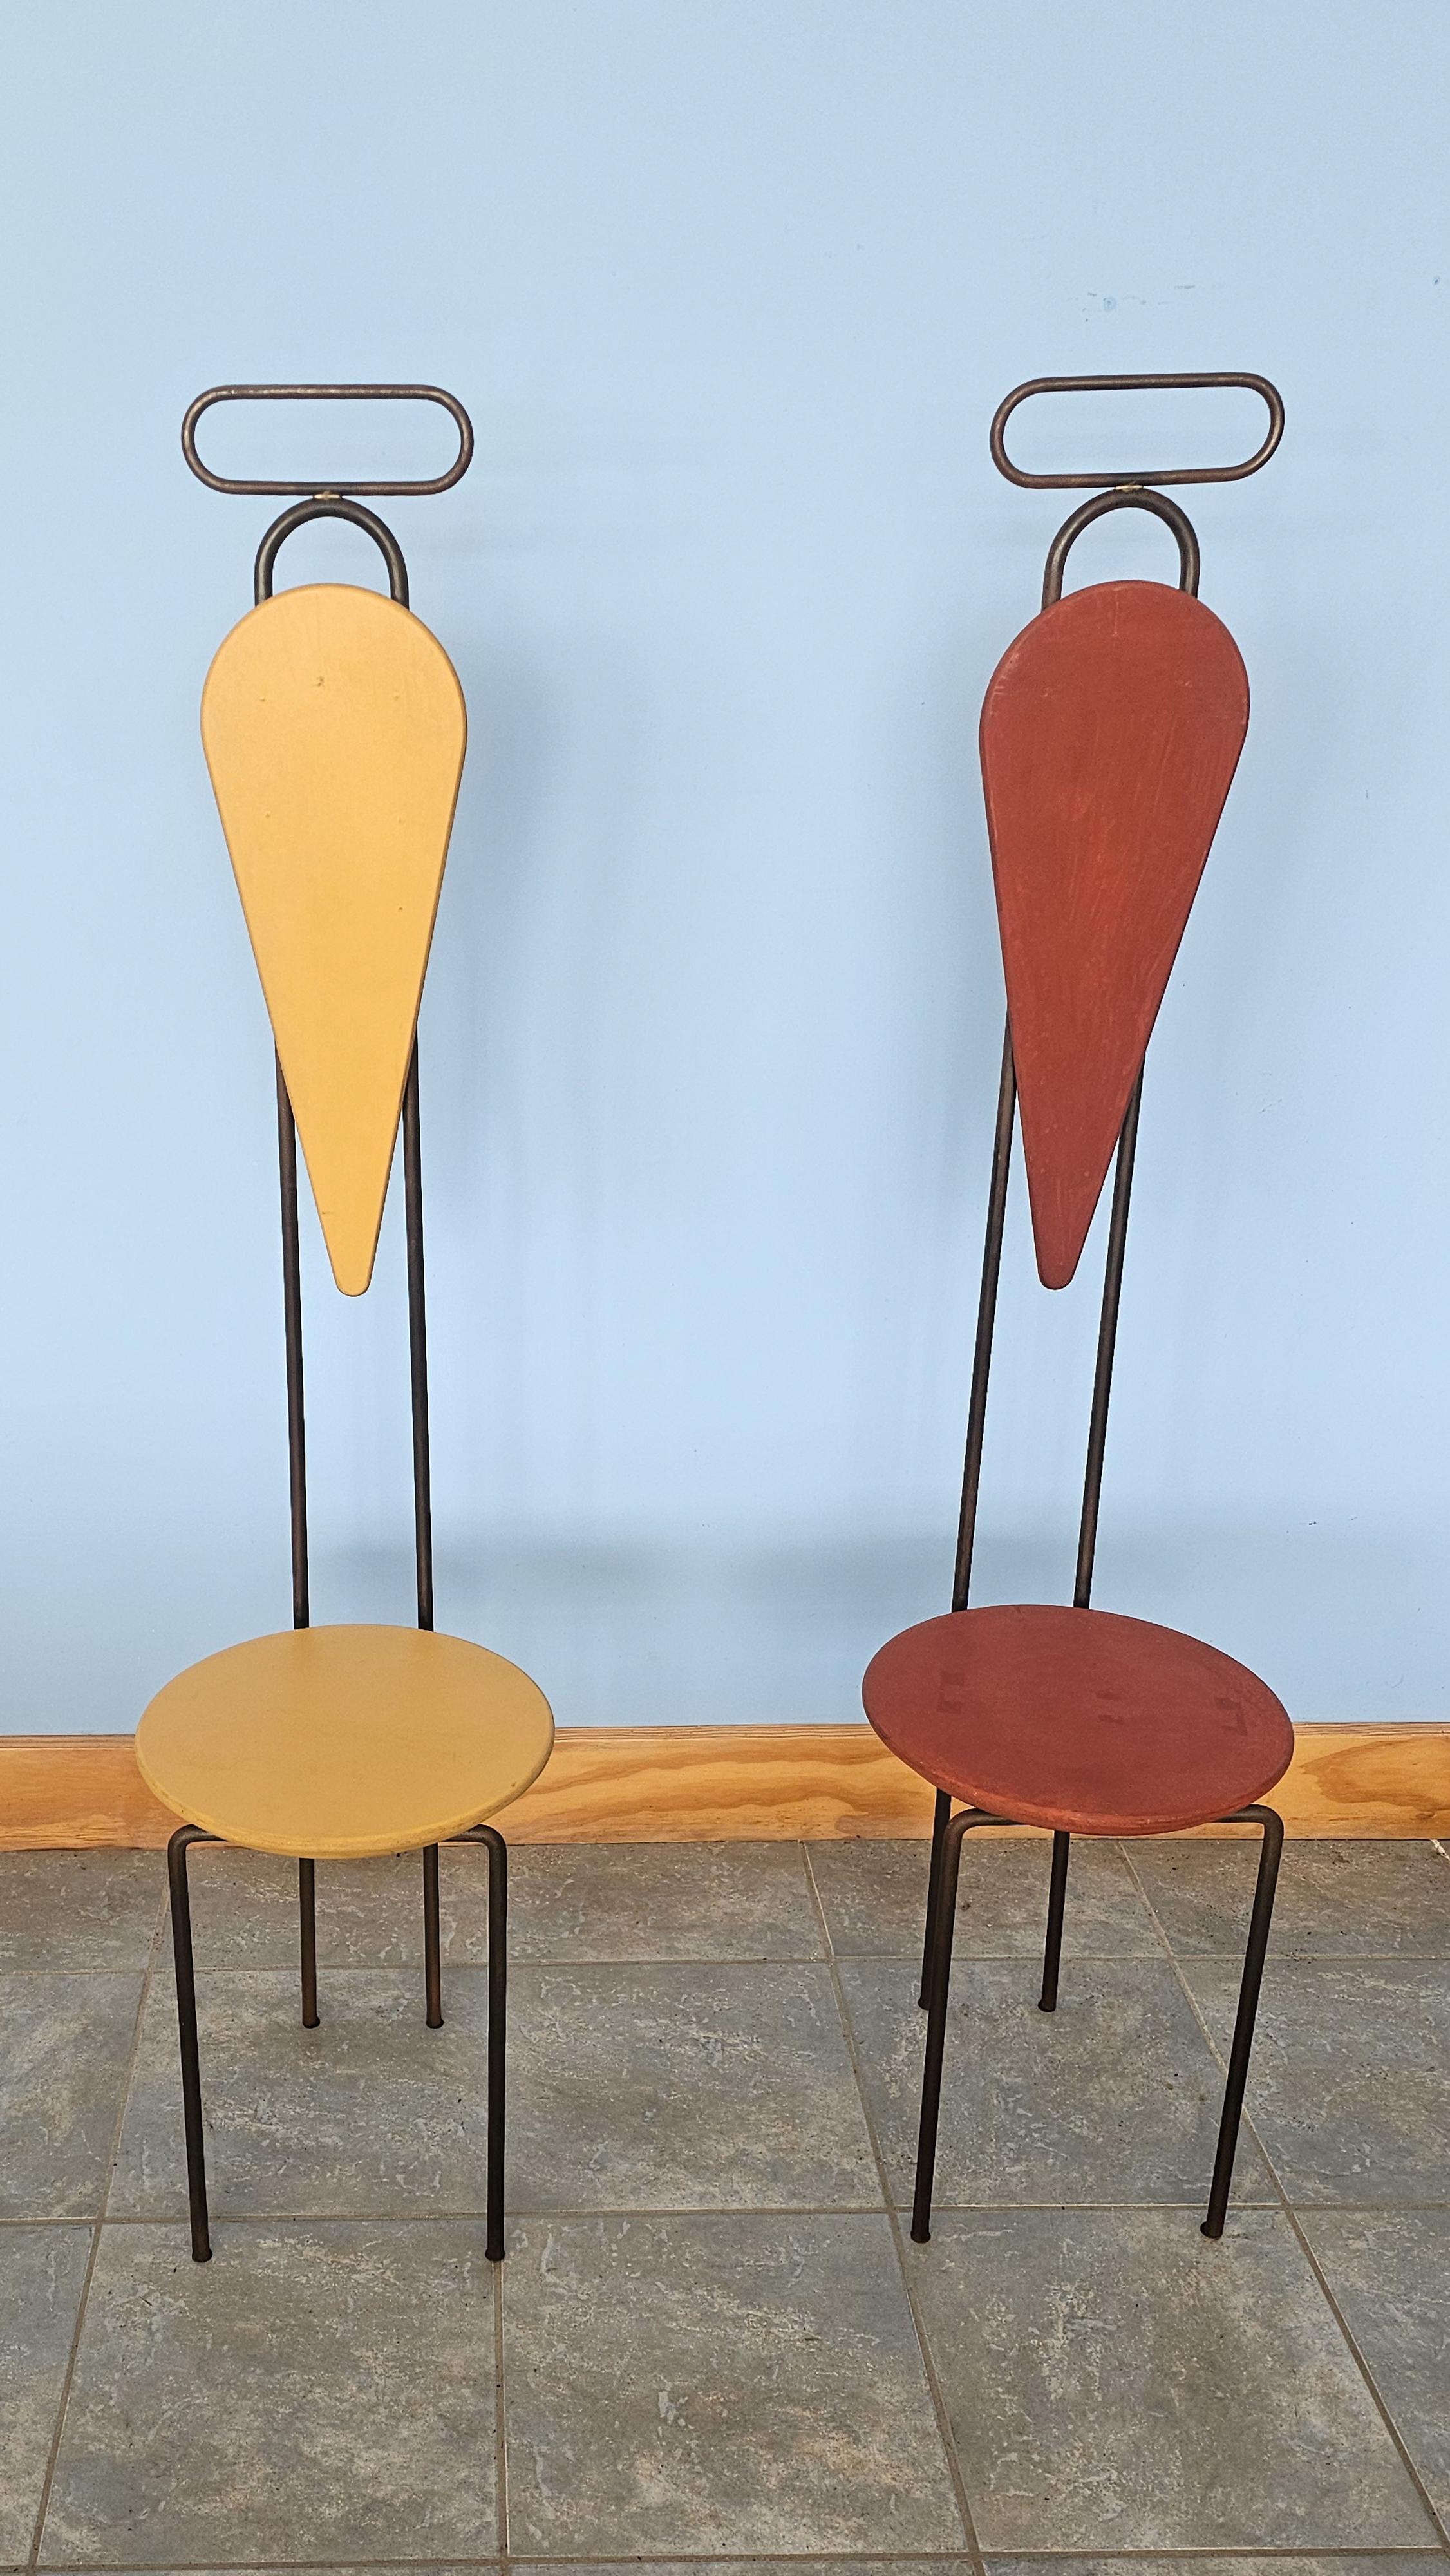 Krish Ruhs, ein amerikanischer Künstler, entwarf diese beiden Stühle für eine Einzelausstellung, die von Cappellini gesponsert und 1990 im Carugo Showroom präsentiert wurde. Handwerkliches Geschick, die Inspiration durch die Natur und die Verwendung